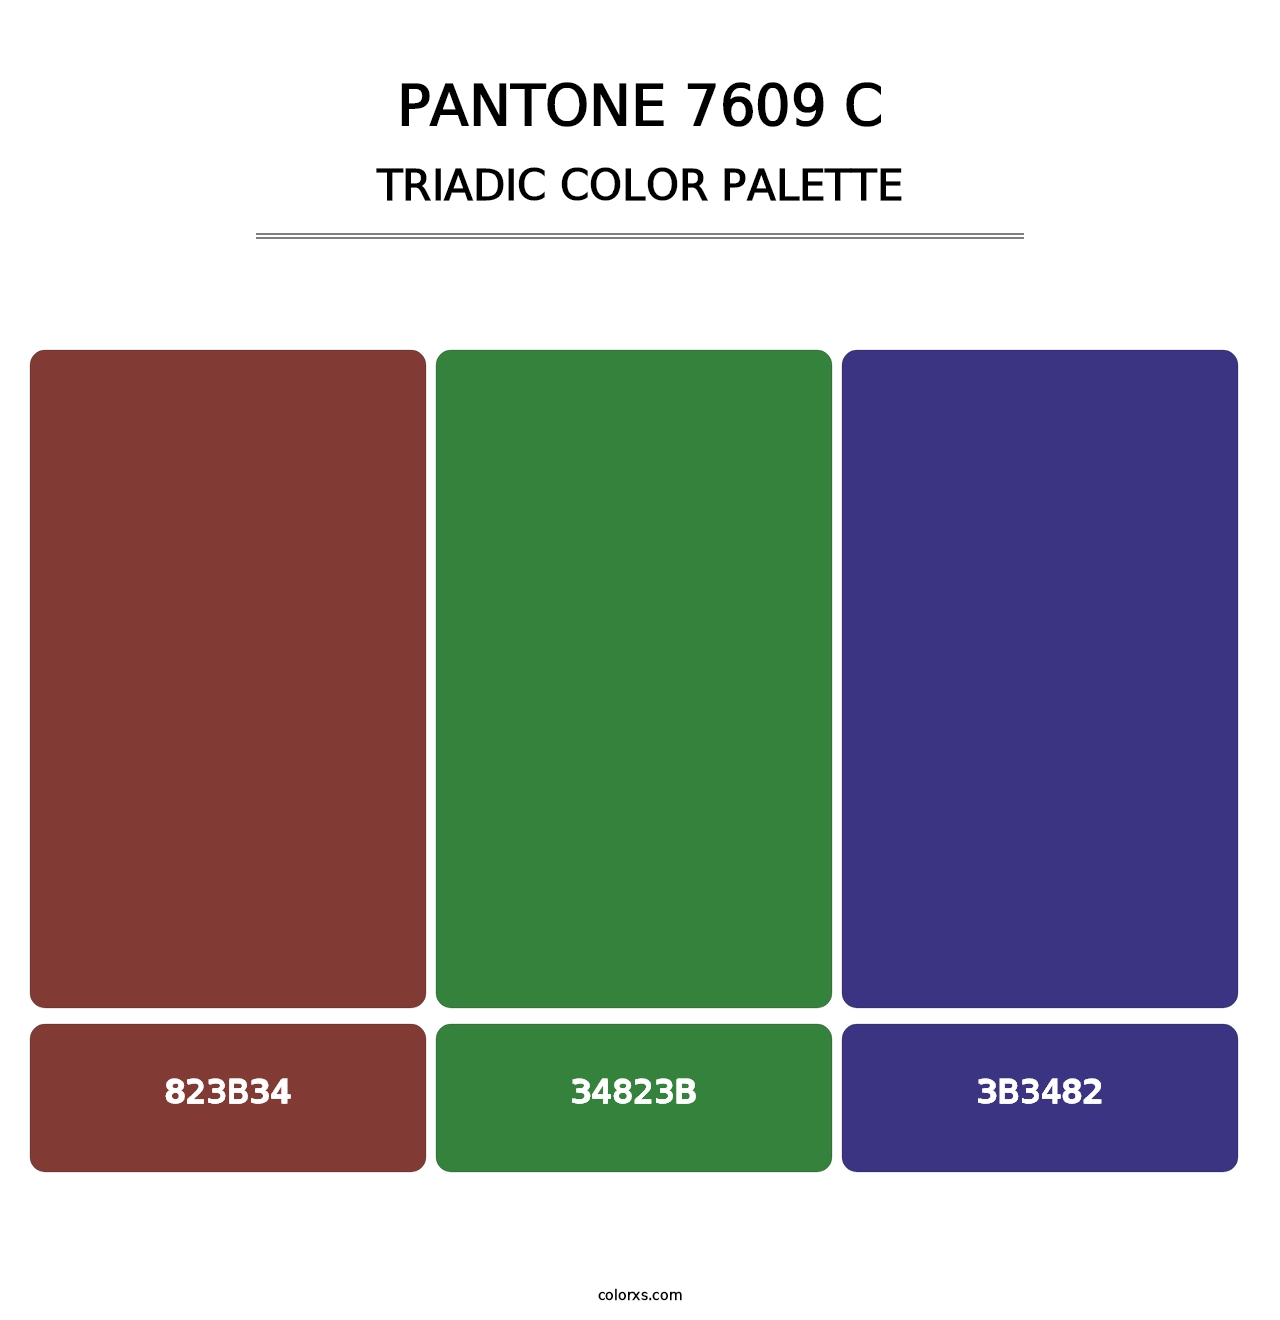 PANTONE 7609 C - Triadic Color Palette